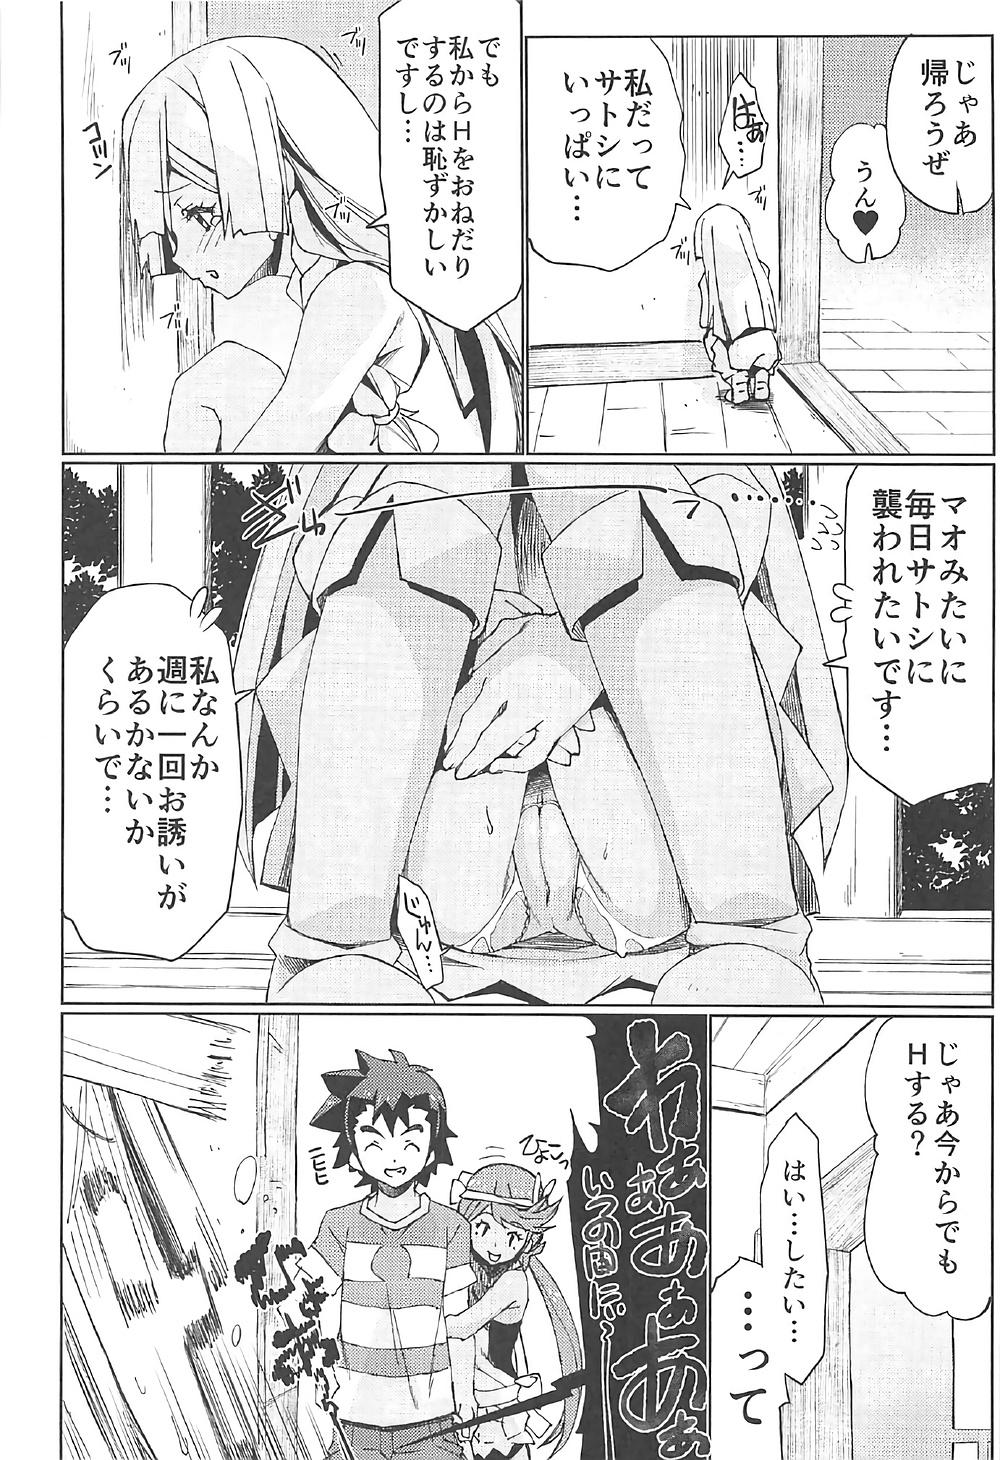 Asian Watashi ga sono Ki ni nareba Ronriteki ni! 2!! - Pokemon Best Blow Job Ever - Page 9